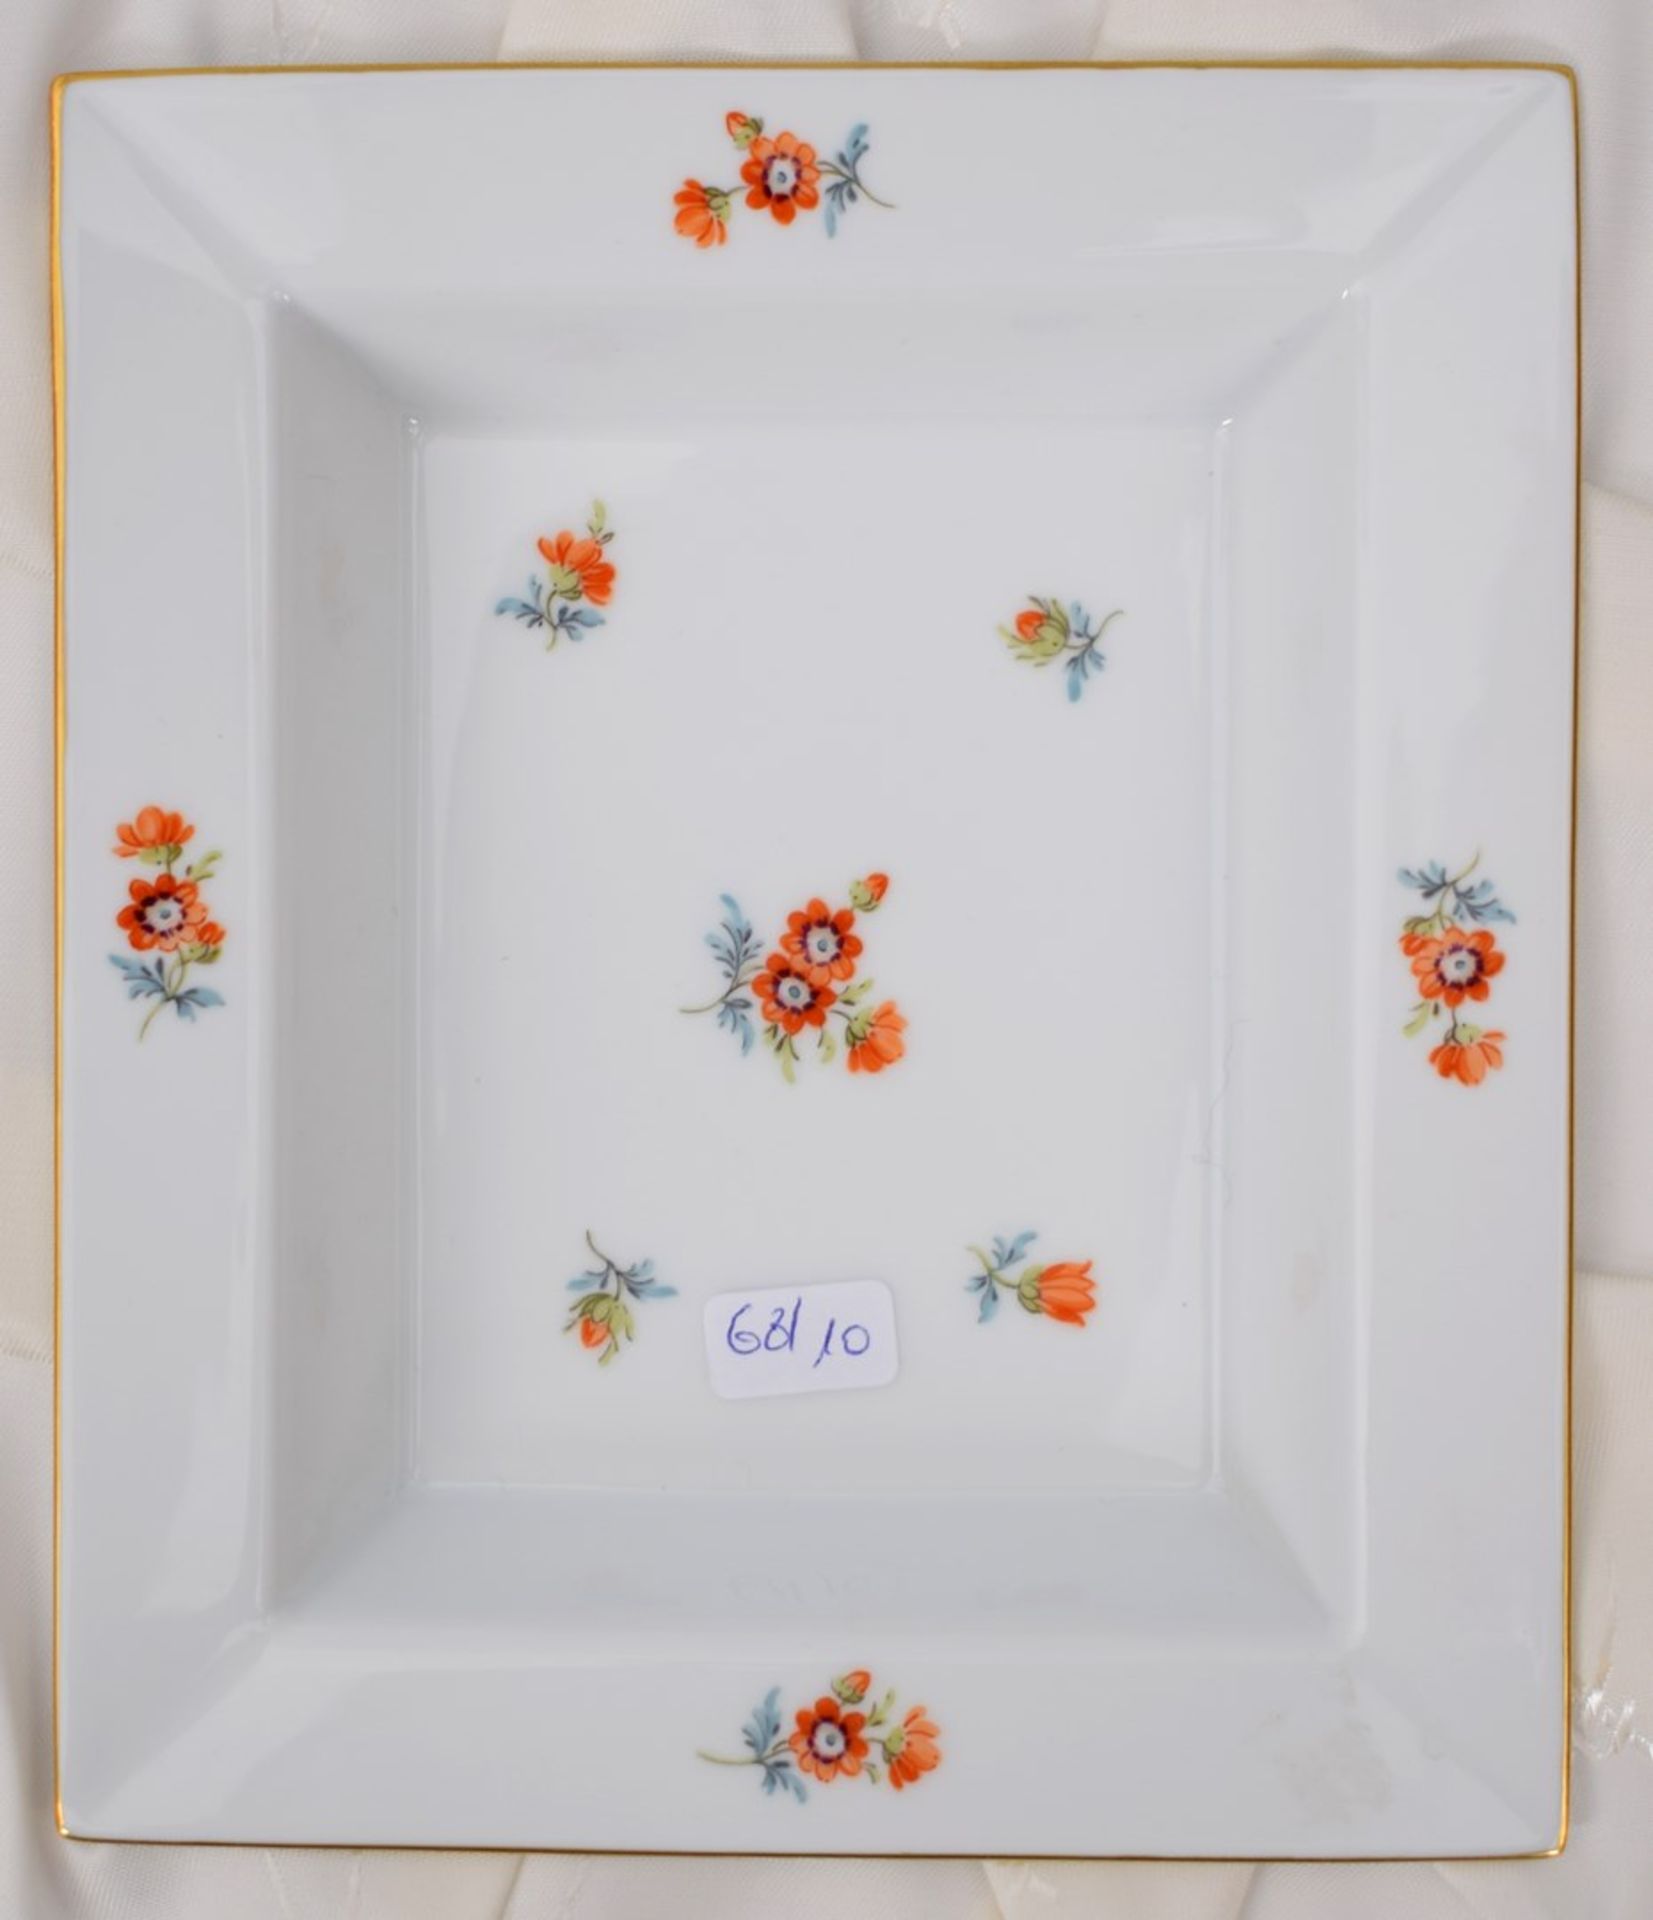 Schalerechteckig, Goldrand, Rand und Spiegel mit Blütenbemalung, 14 X 16 cm, im originalen Karton,